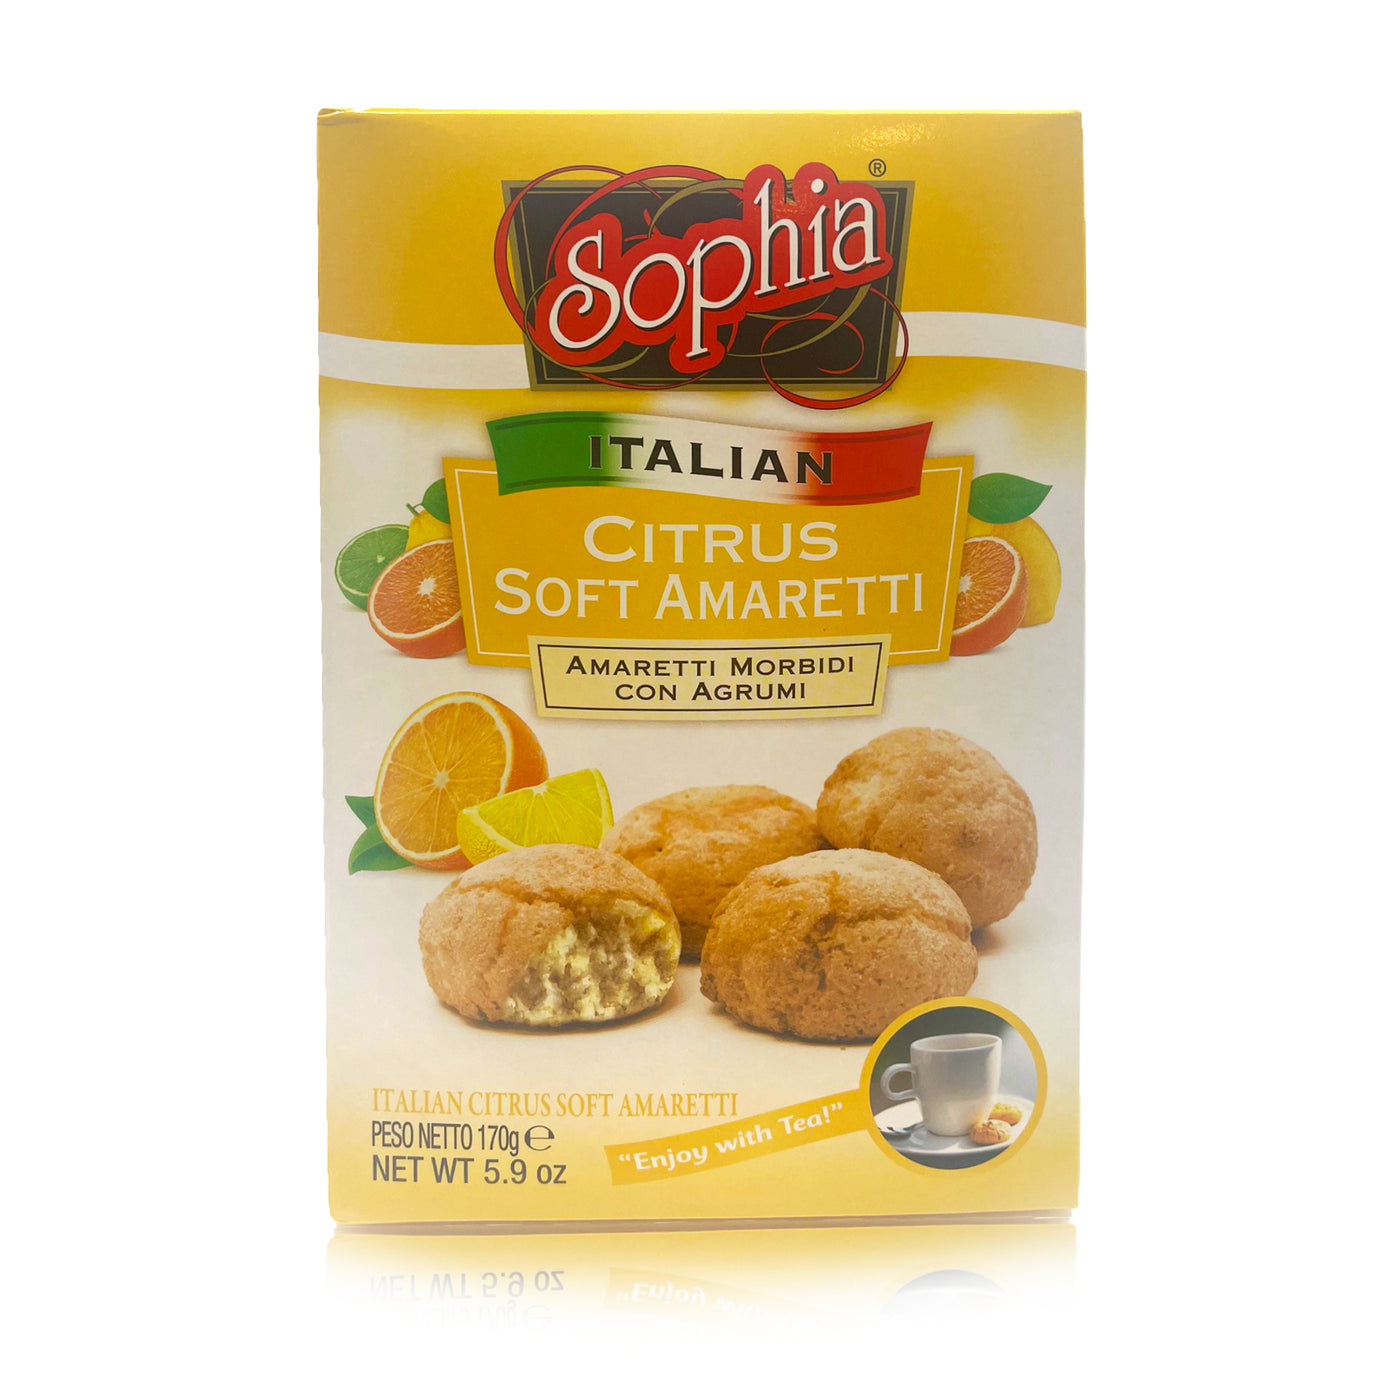 Sophia Soft Amaretti - Citrus